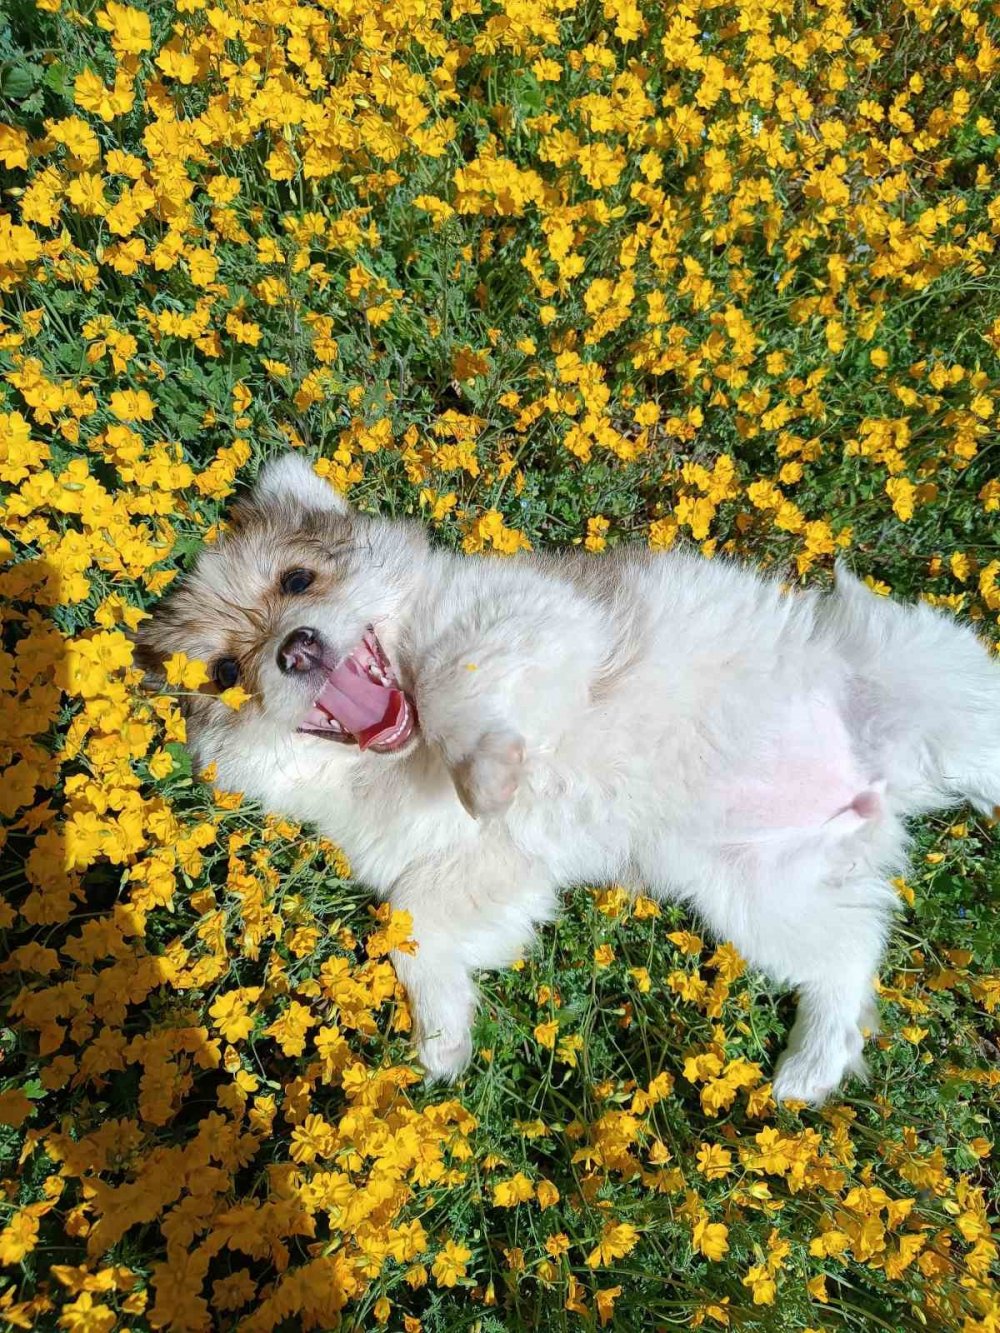 Çiçekler Arasında Oynayan Sevimli Köpeklerin Halleri Gülümsetti